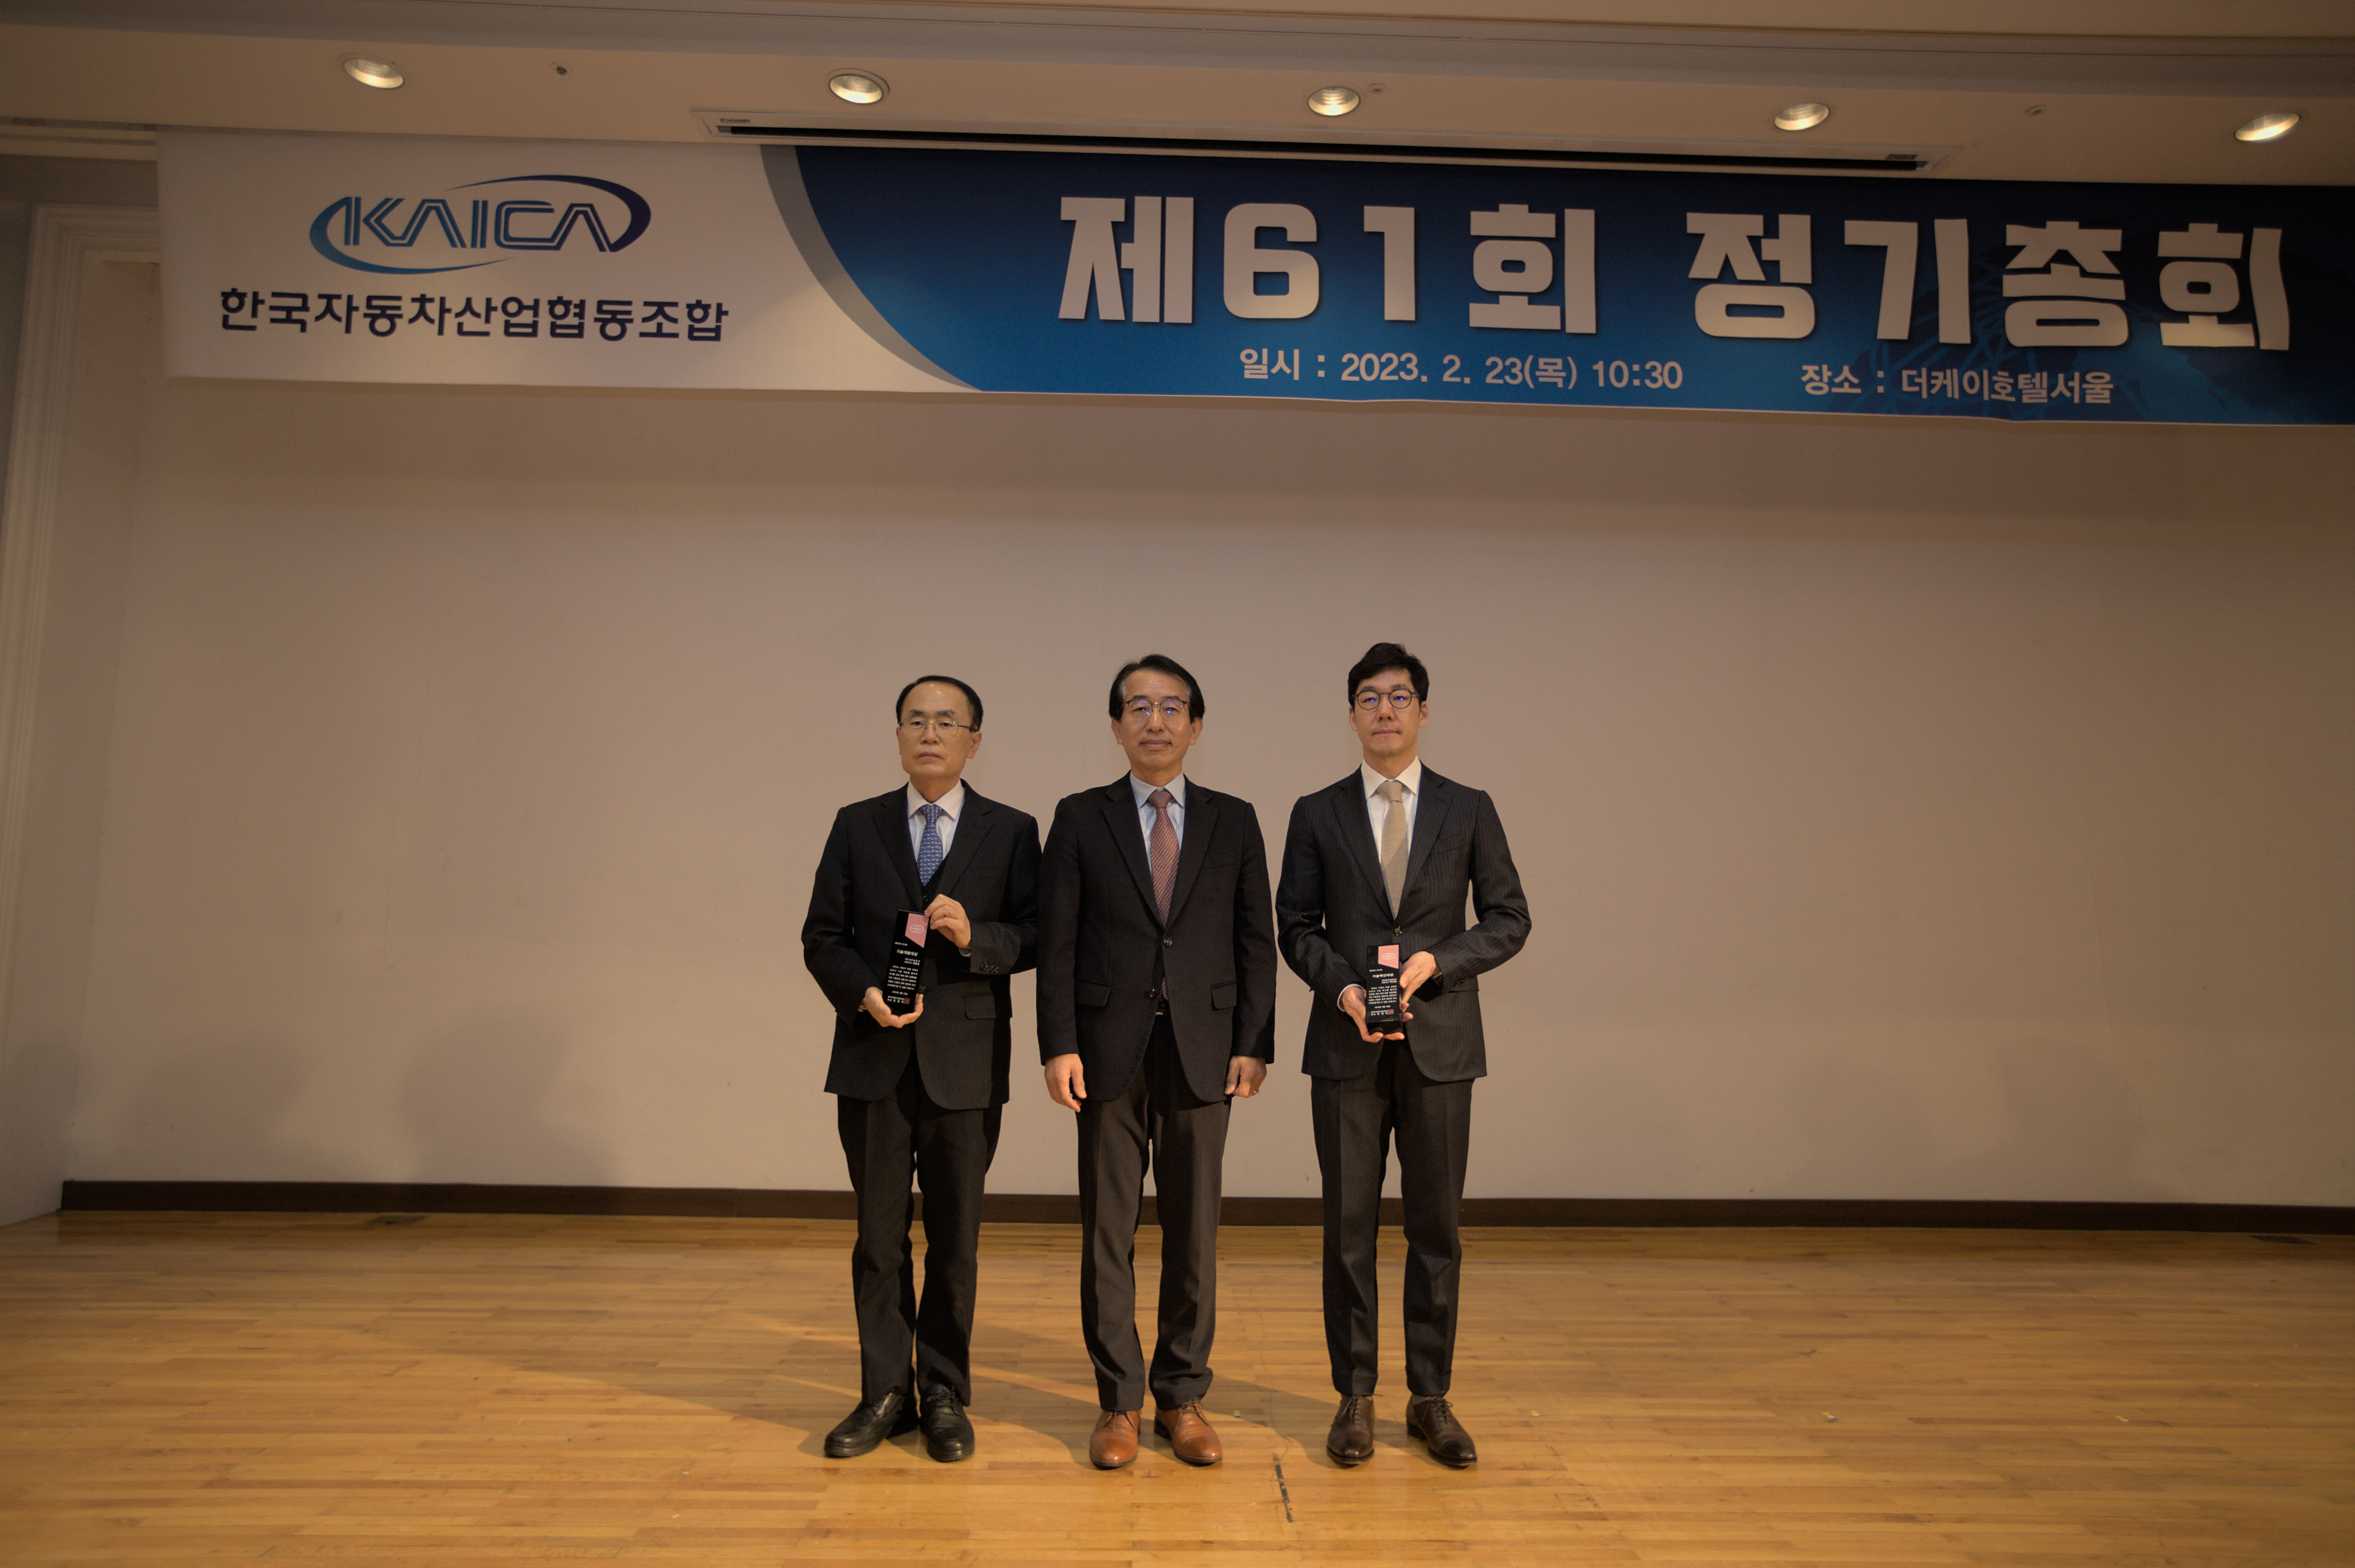 조합원사 태양금속공업(주) - 한국자동차공학회로부터 '기술혁신대상' 수상 2022.2.23